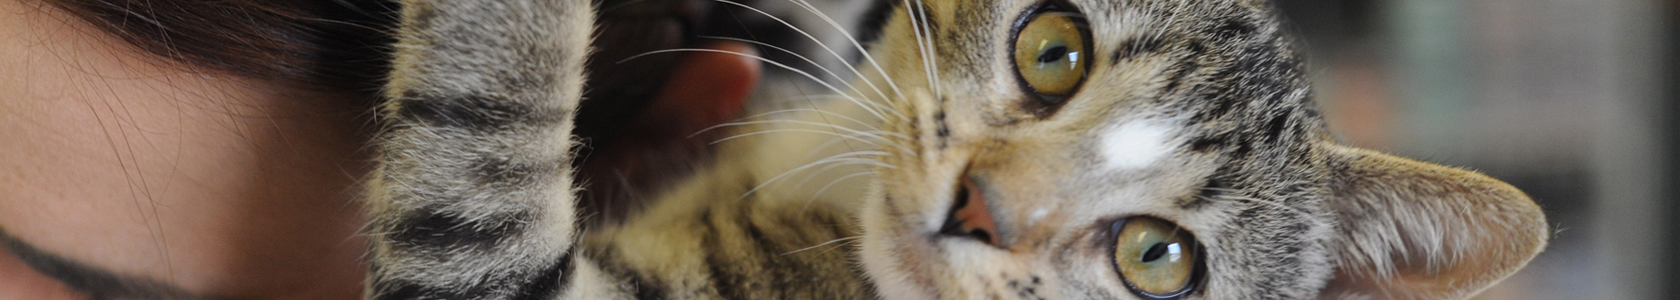 Stress du chat - Comment apaiser et soigner un chat stressé